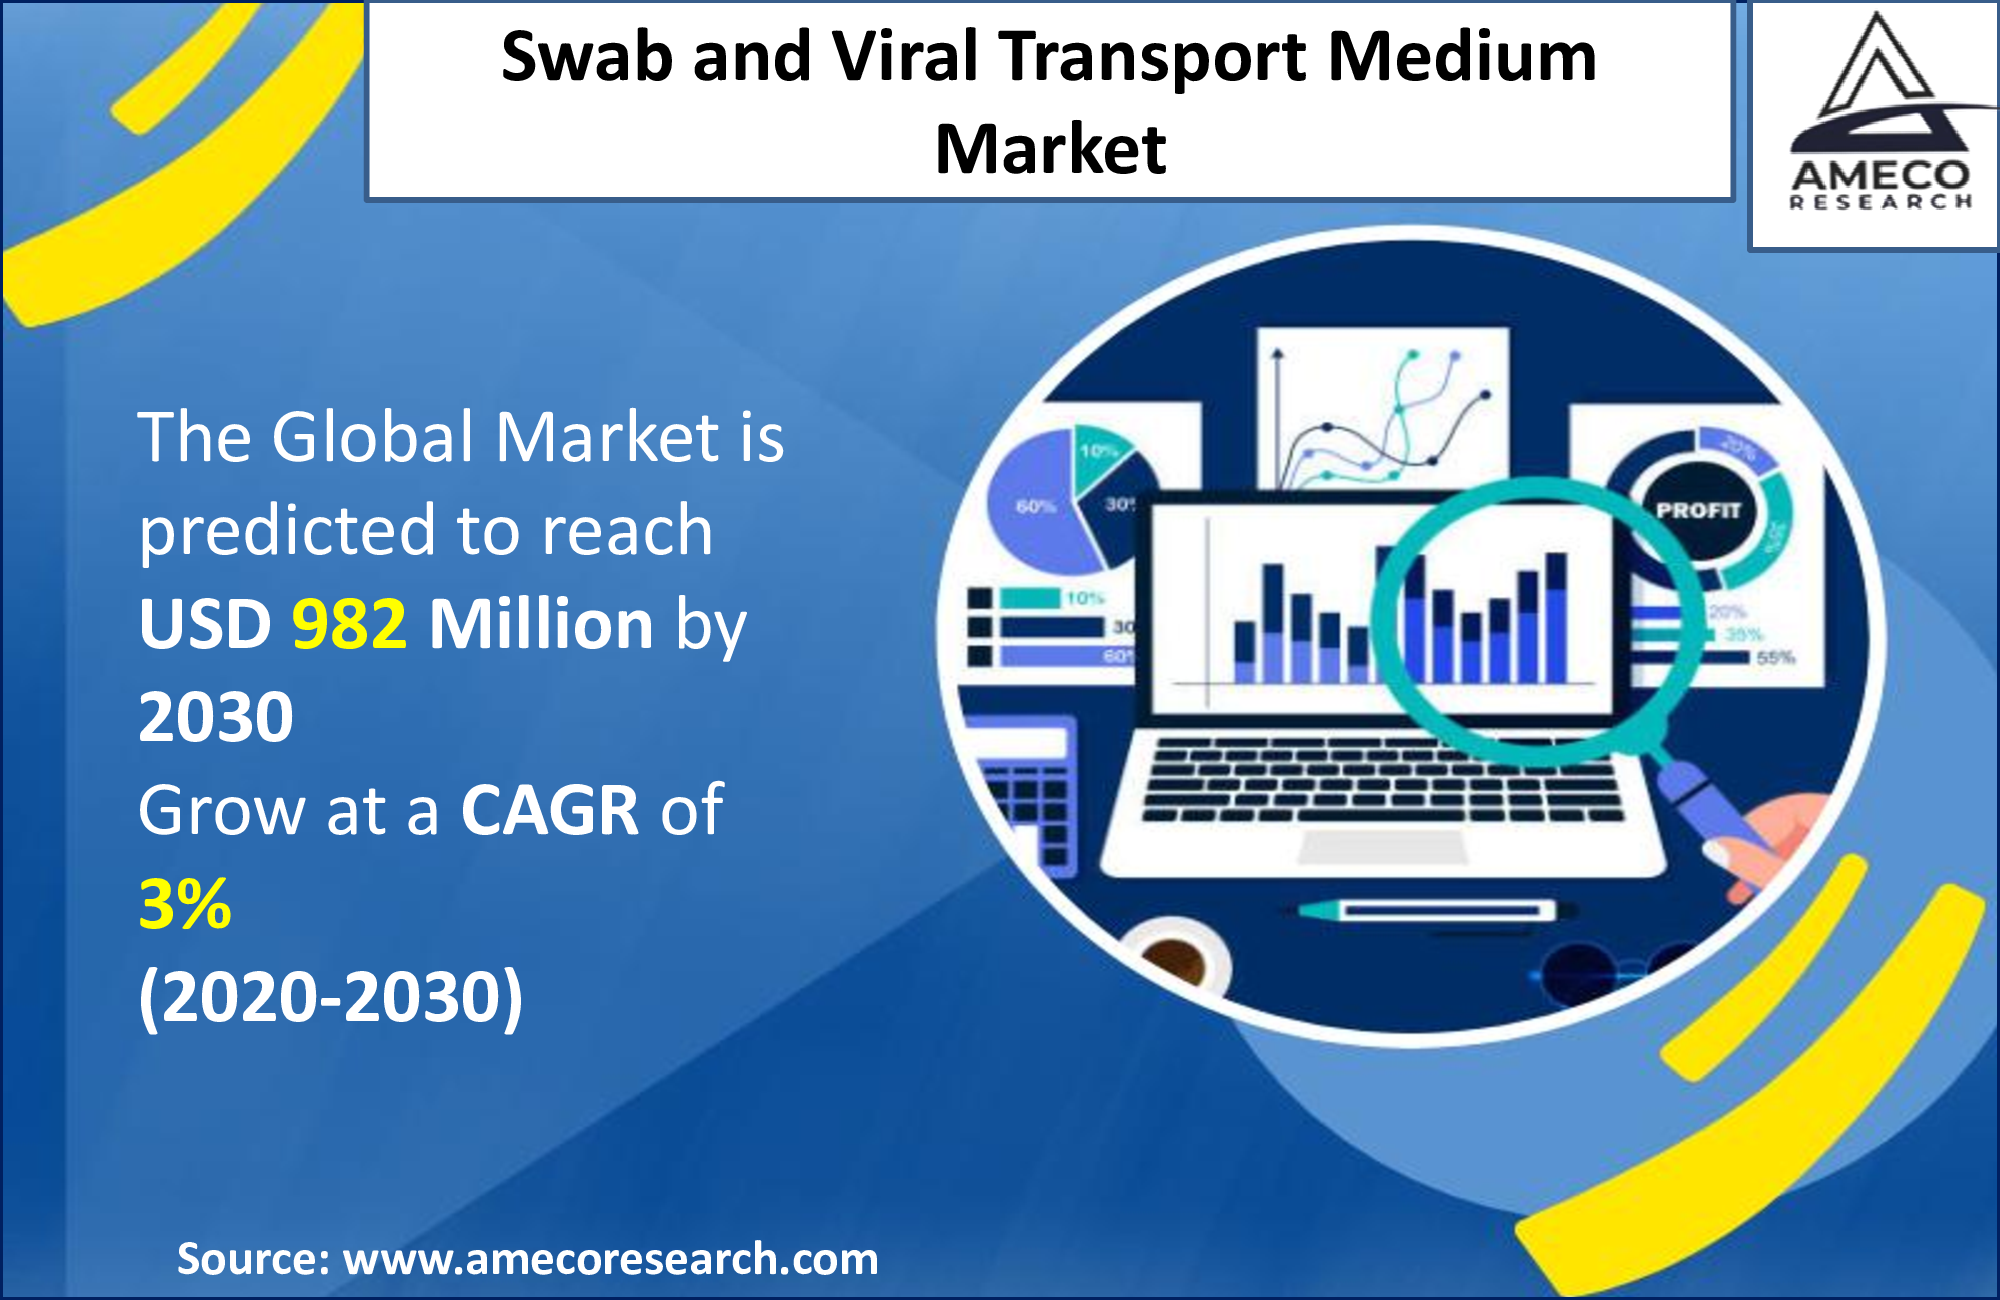 Swab and Viral Transport Medium Market